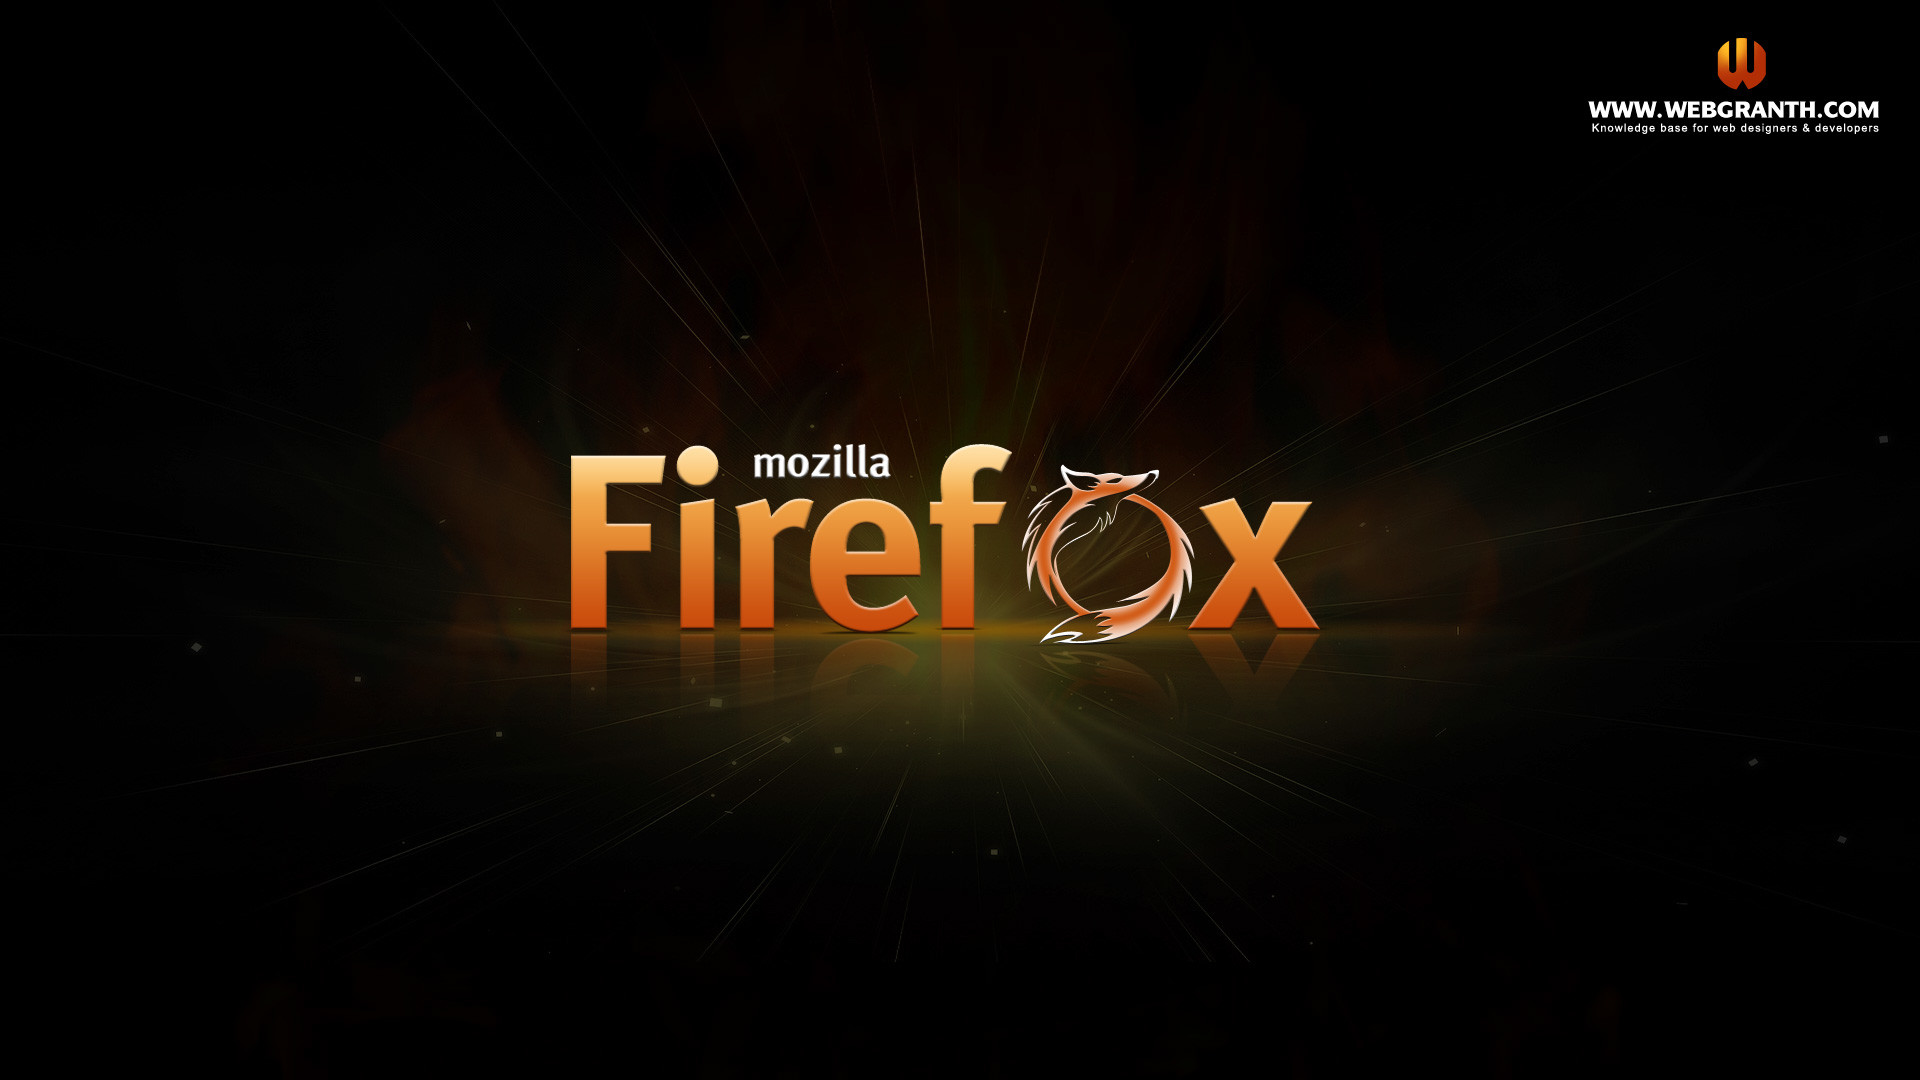 1920x1080 HD Mozilla Firefox wallpaper 2013 @webgranth